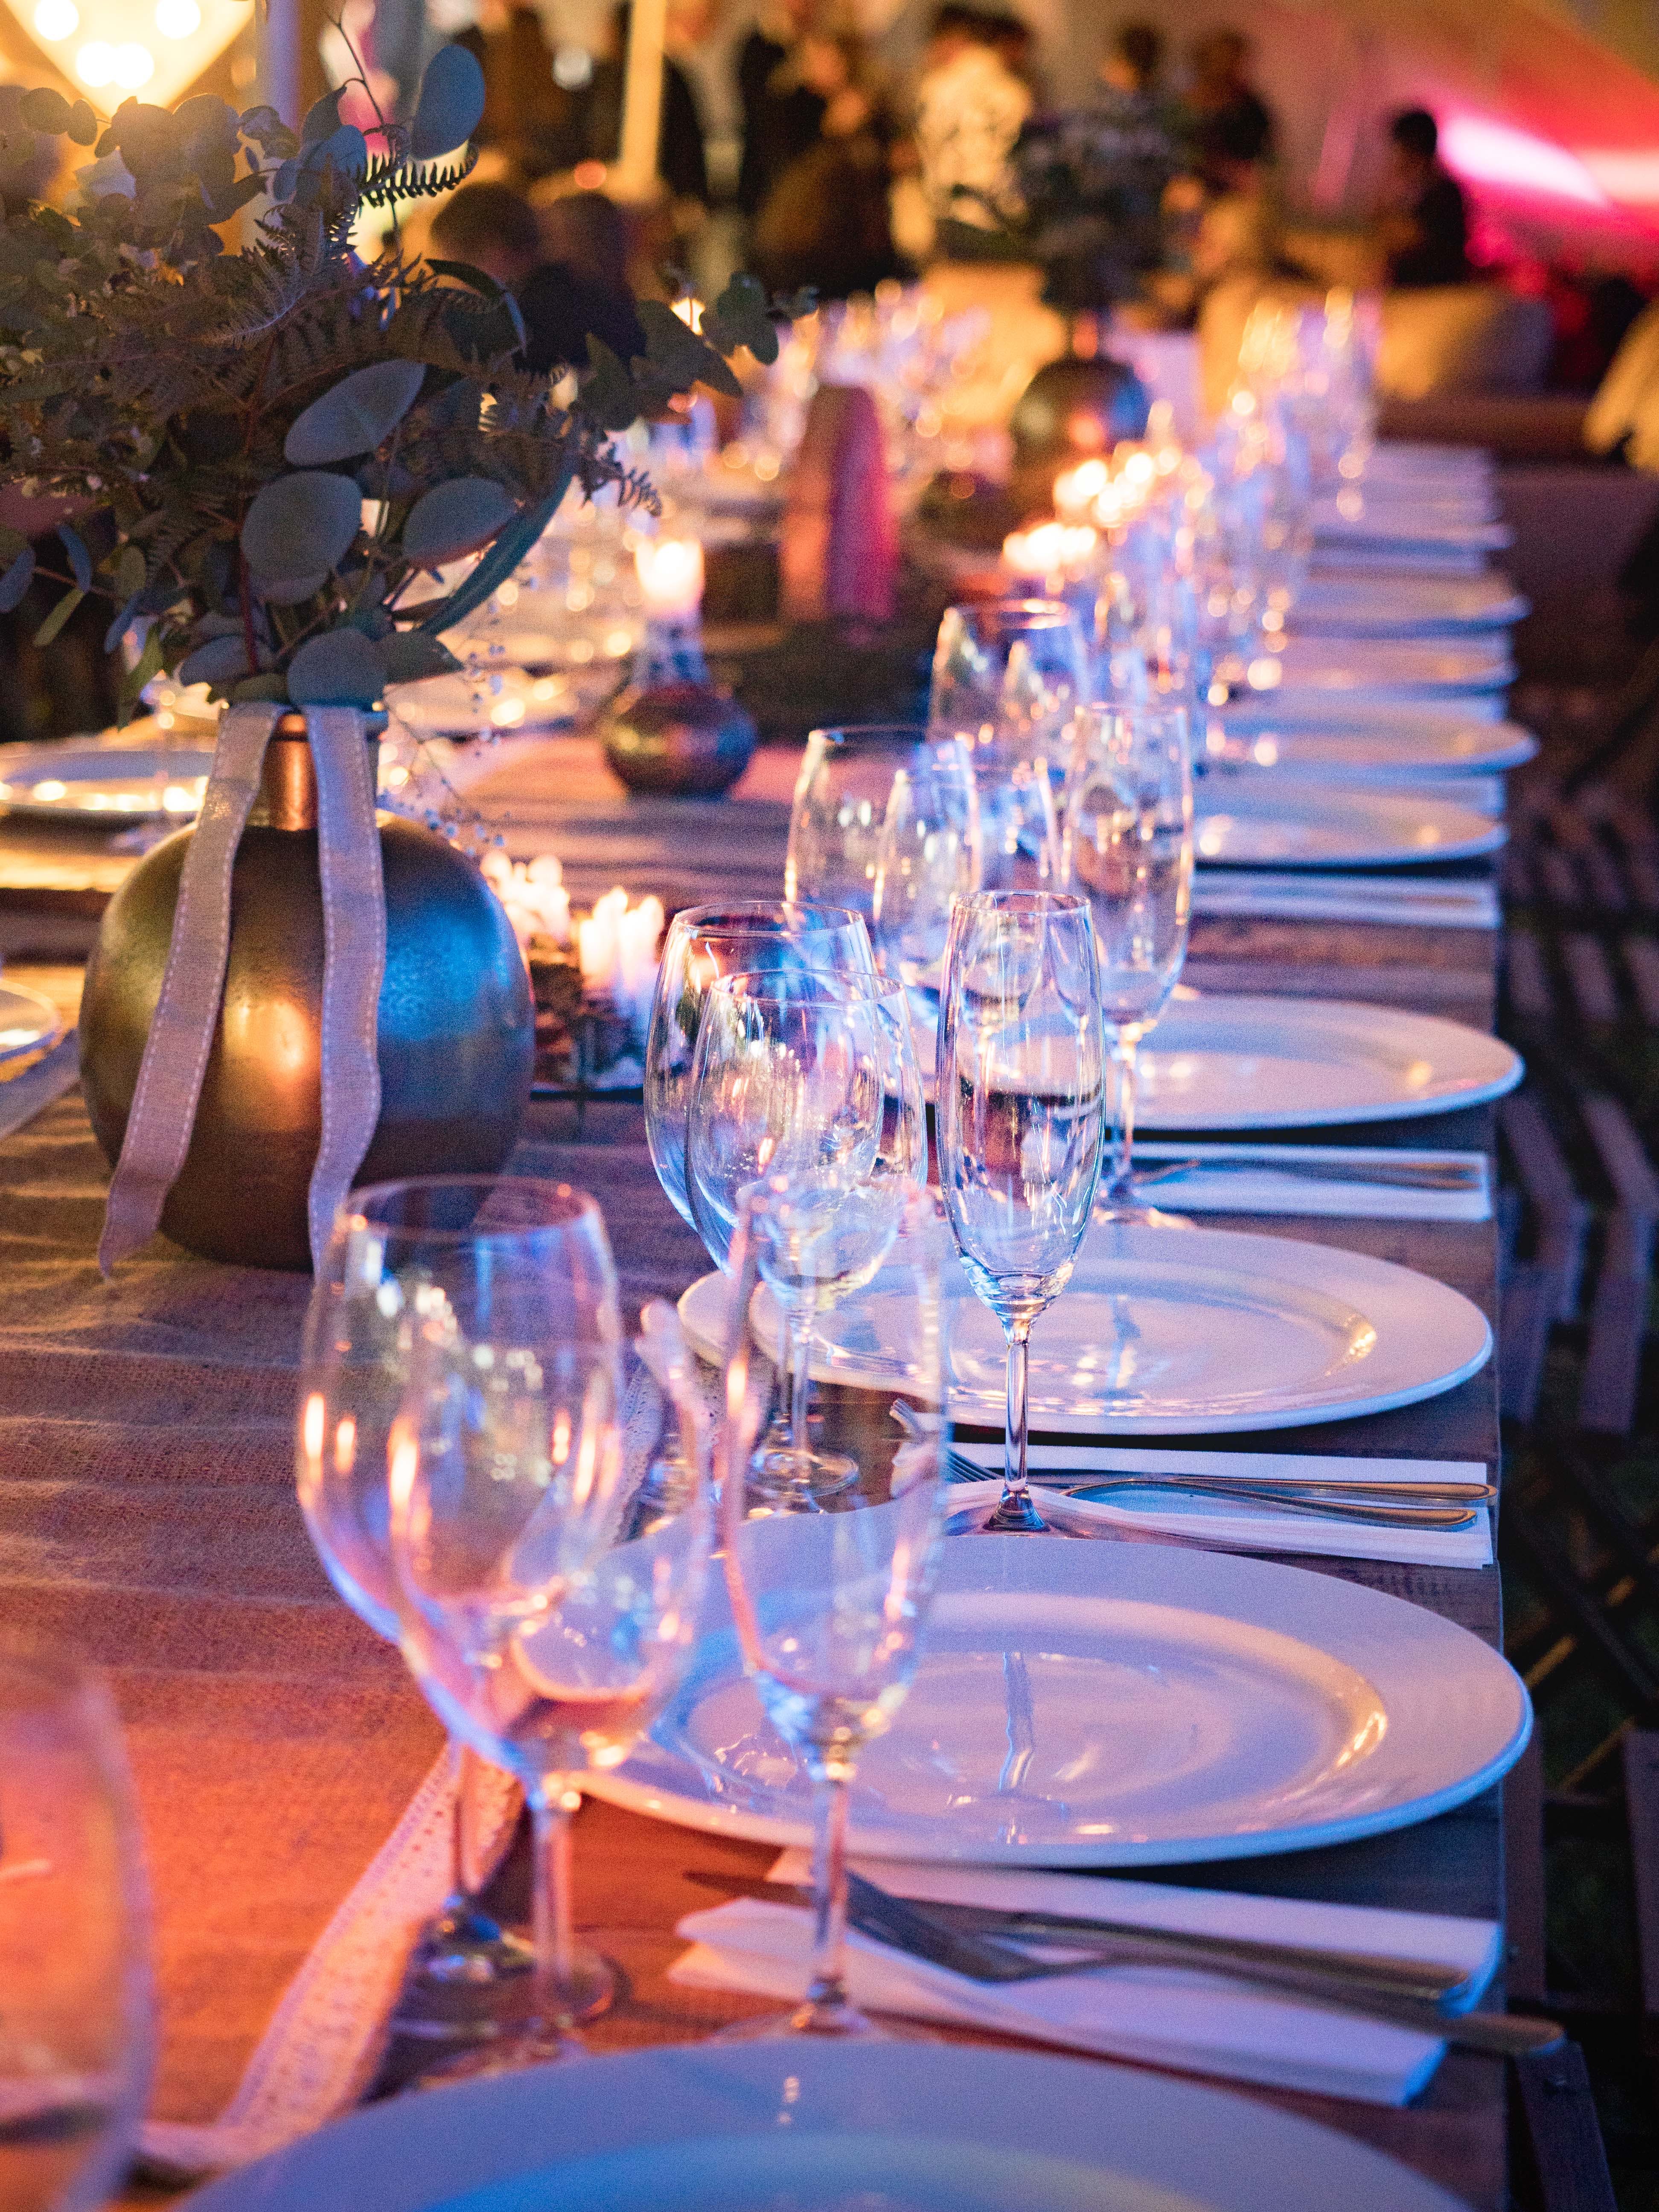 Ein Tischarrangement mit Gläsern und Tellern bei einer Veranstaltung im Freien | Quelle: Pexels